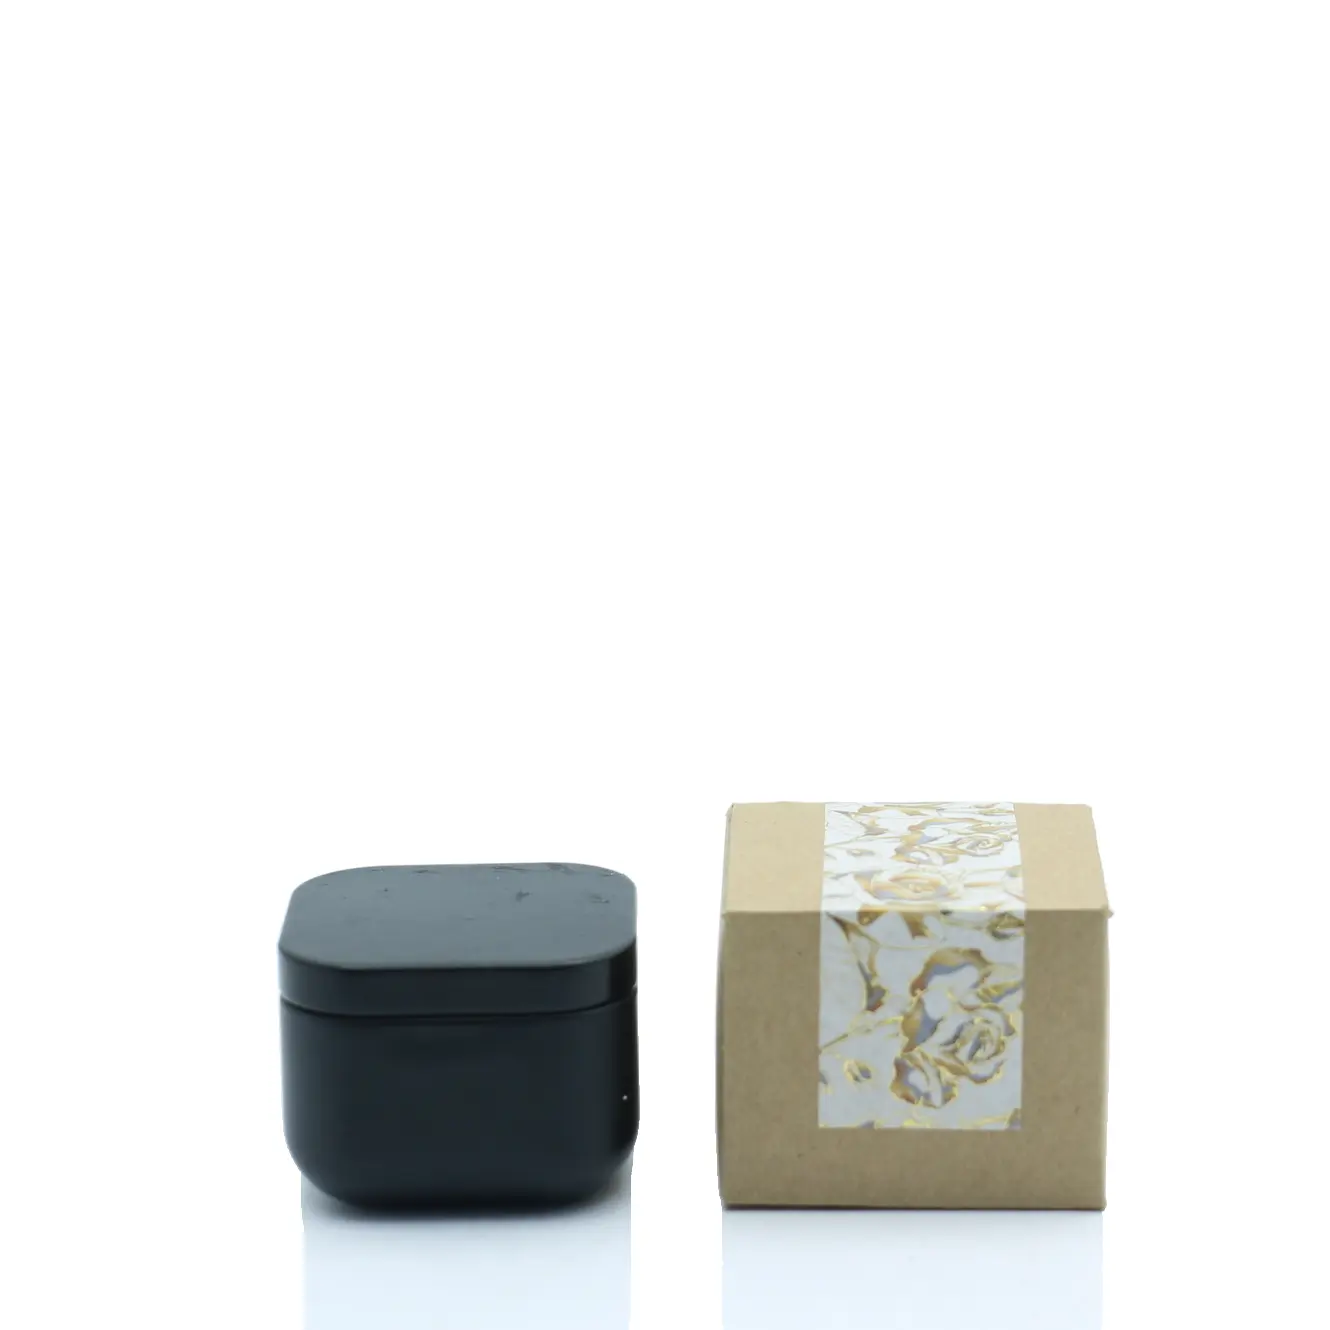 Mini Zinn parfümierte Kerze natürliche Soja Wachs Kerzen Home Duft Baumwolle Wick schwarze Kerze mit Box